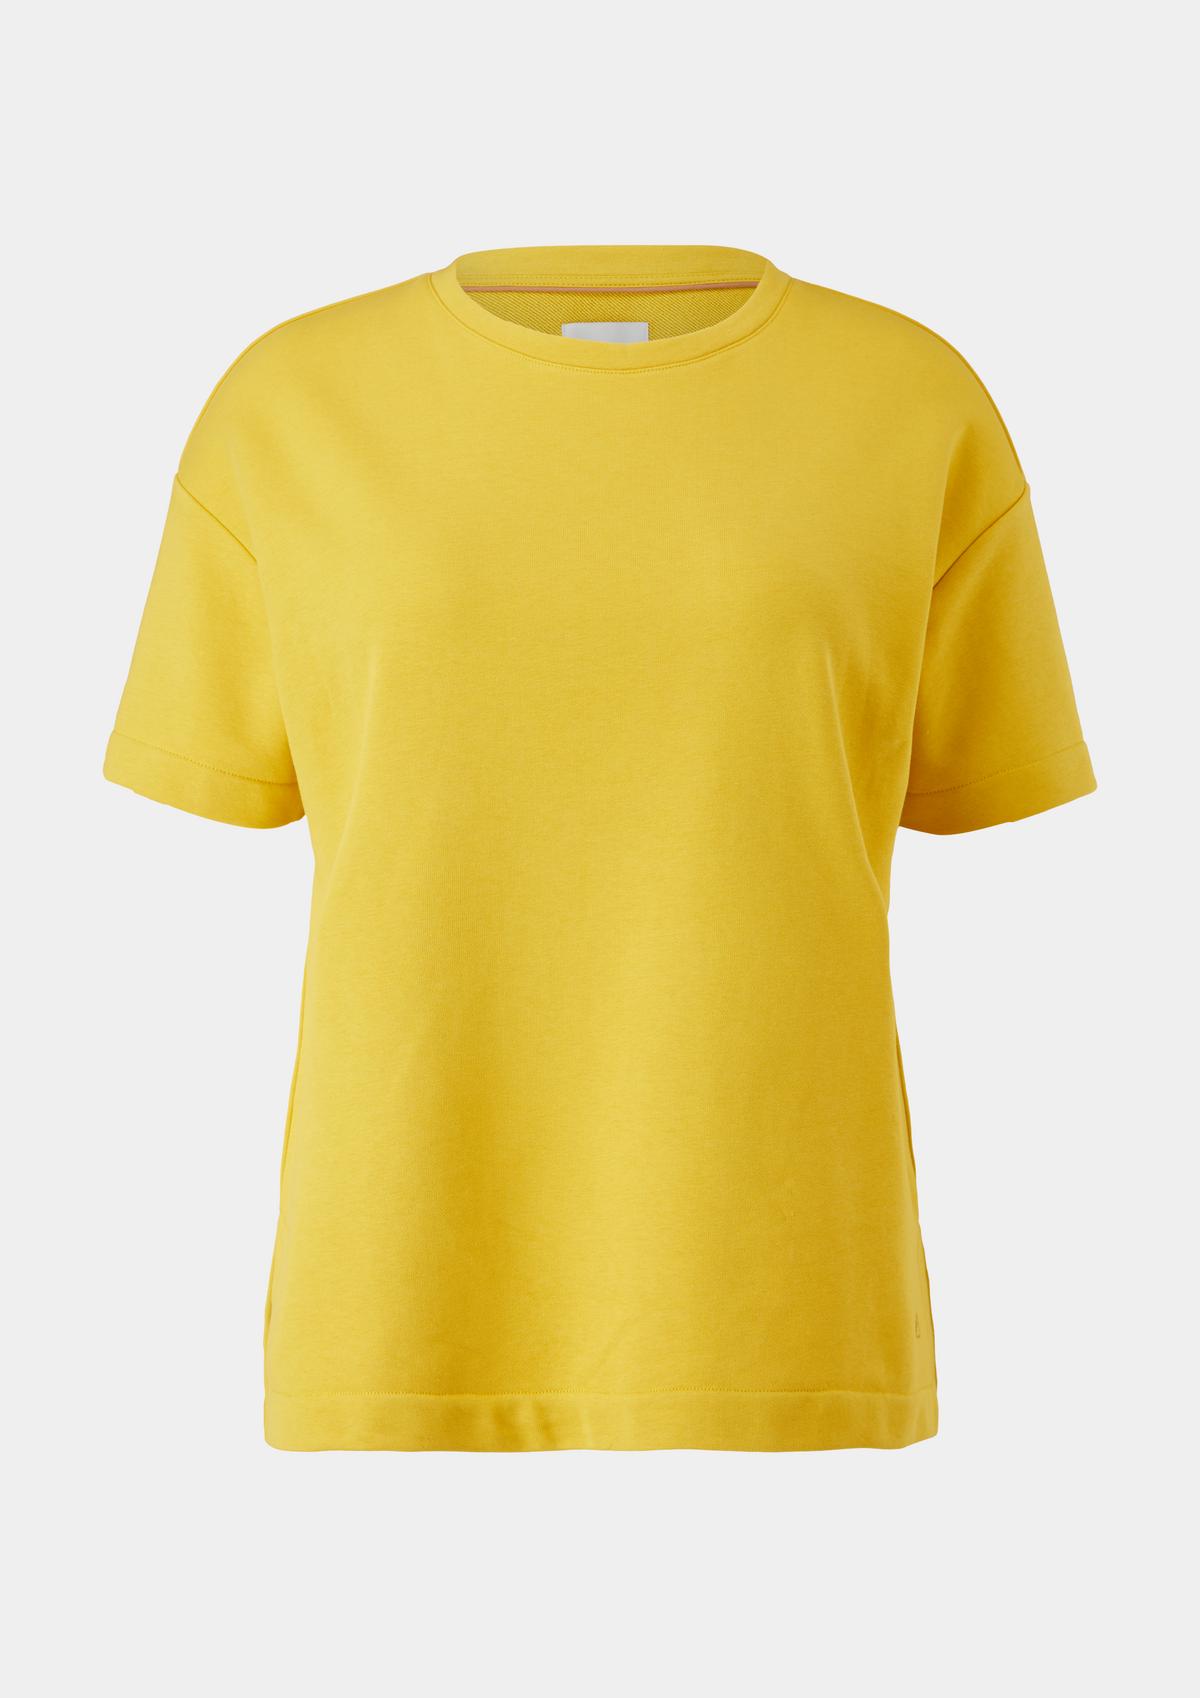 - kurzen gelb Sweatshirt Ärmeln mit